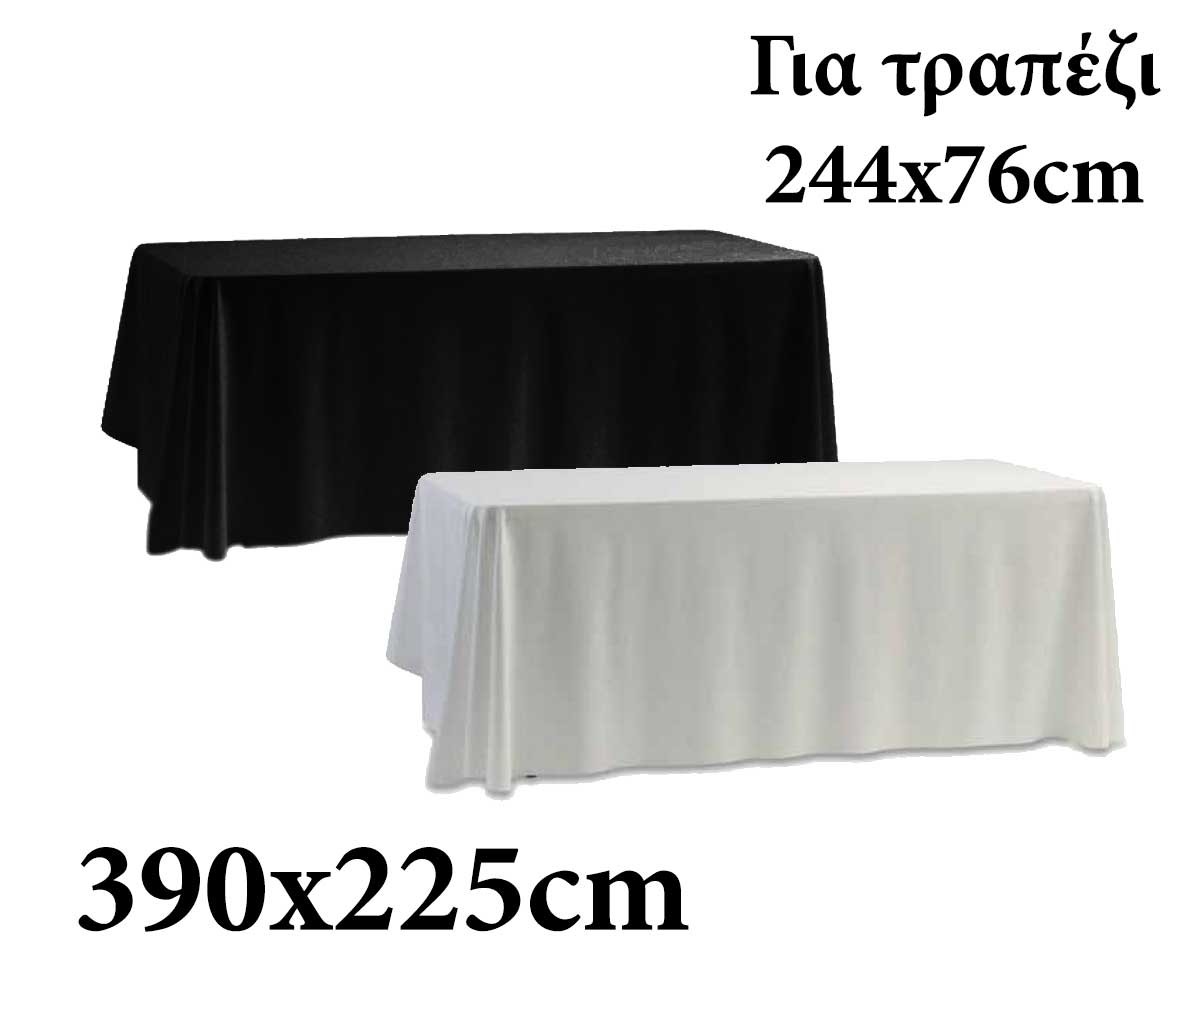 Υφασμάτινο τραπεζομάντηλο Target 390x225cm για τραπέζι 242x76cm